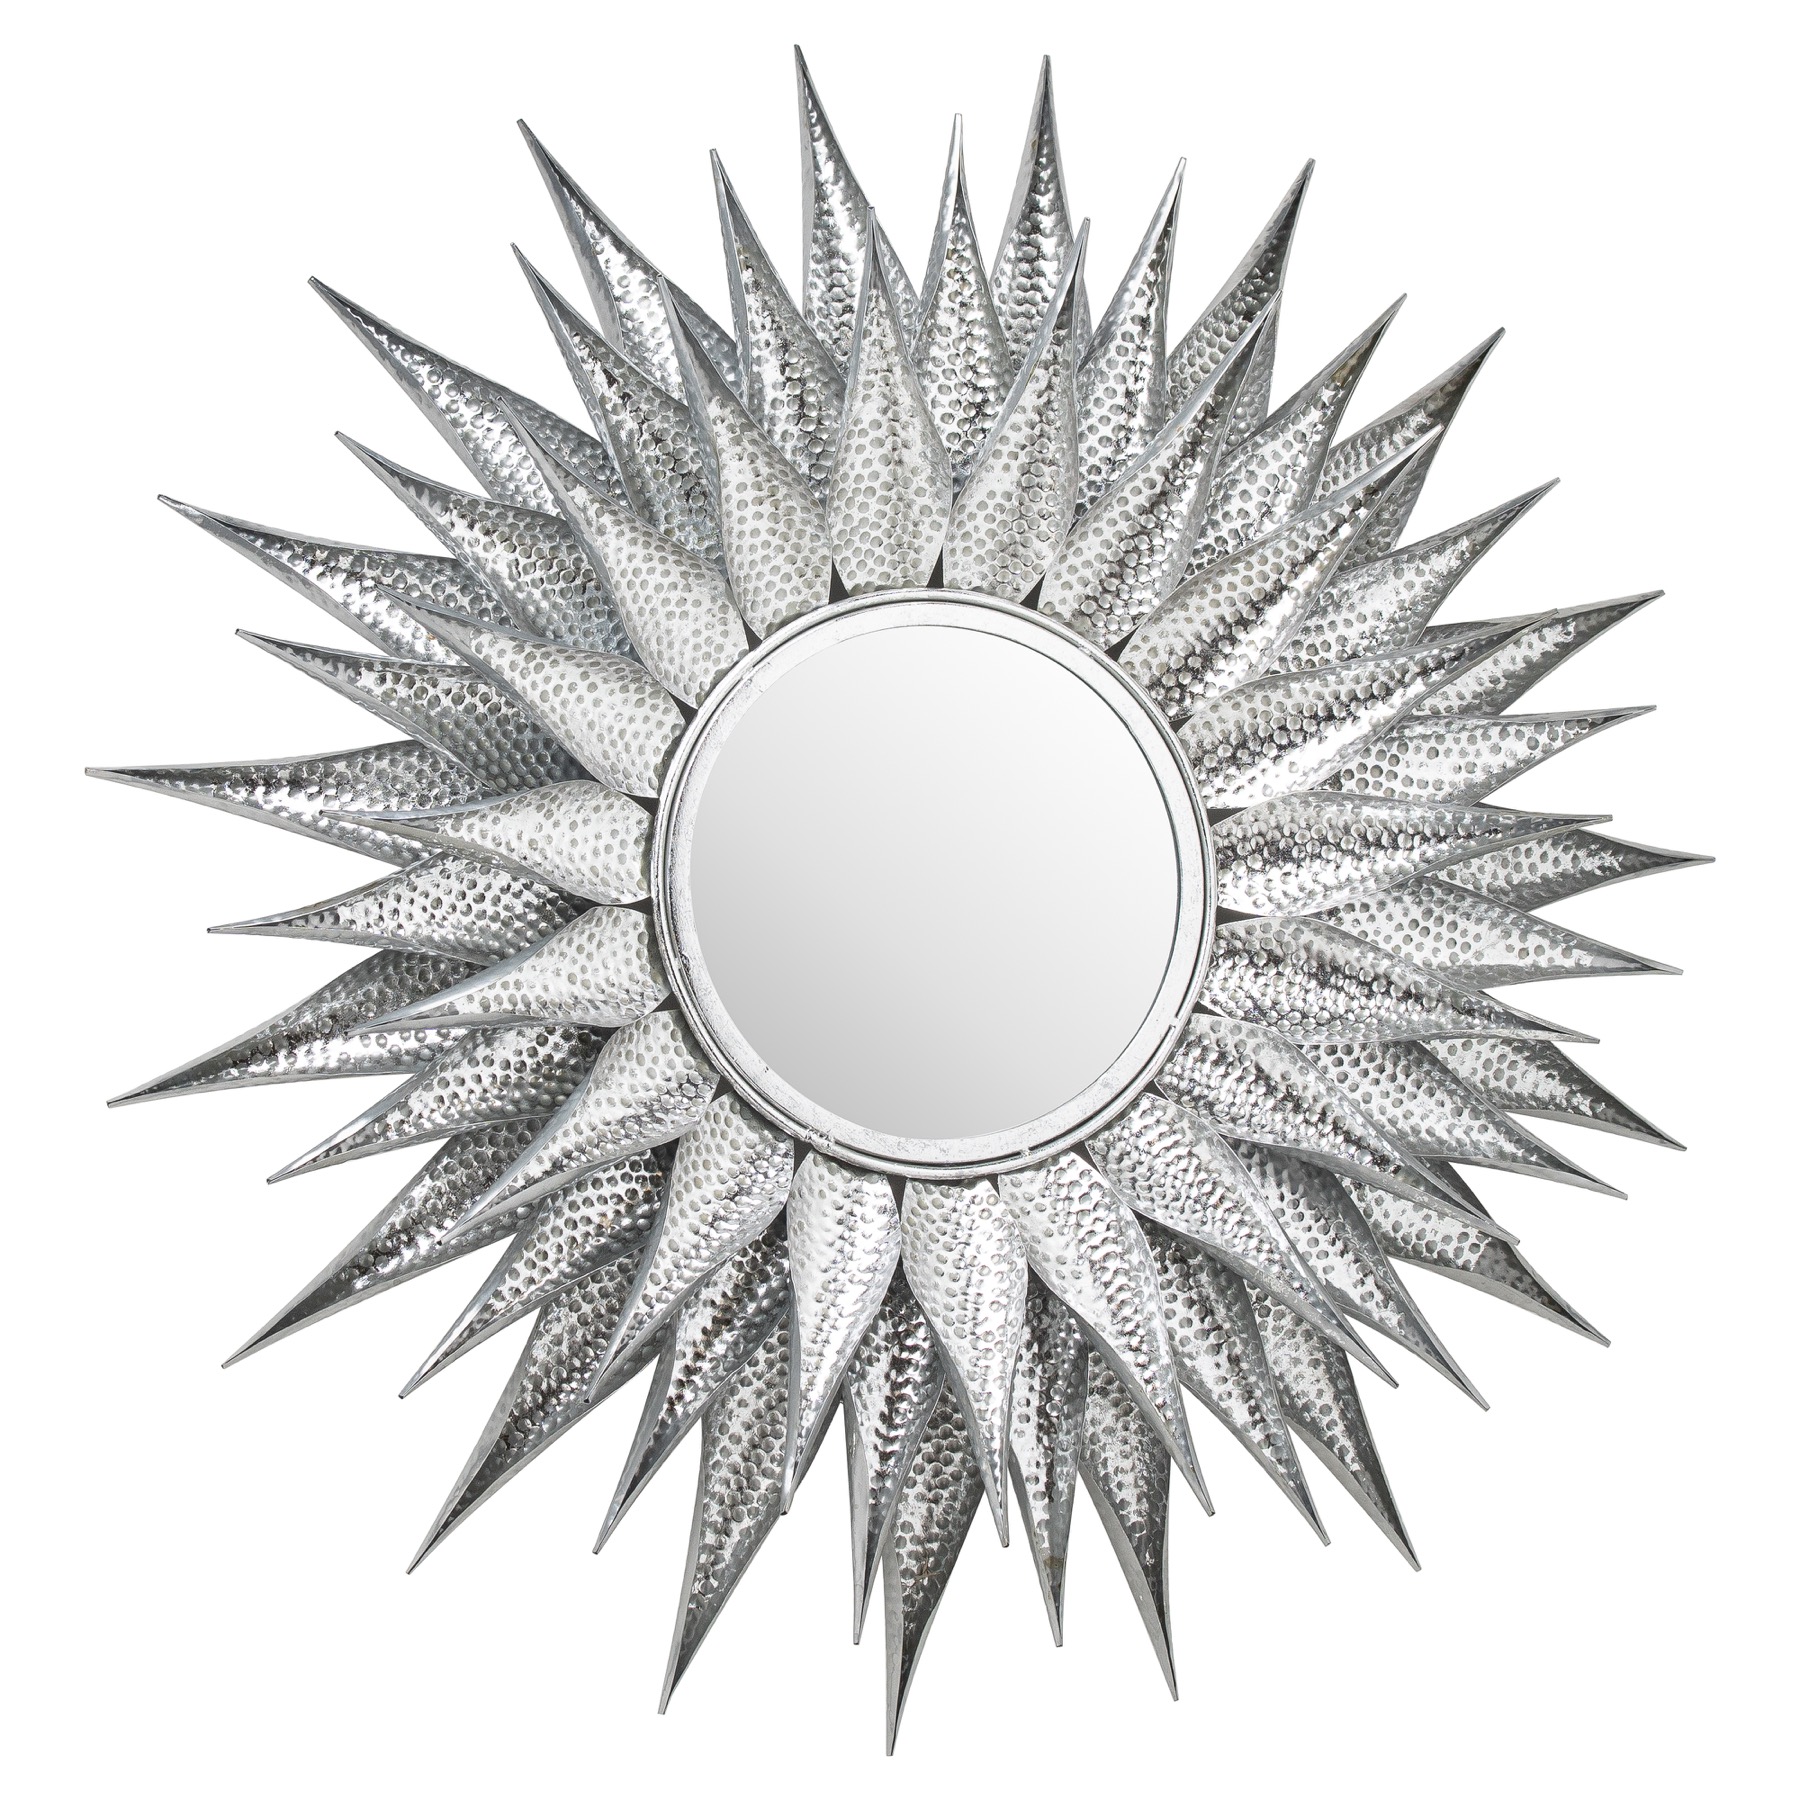 Ohlson Silver Large Sunburst Mirror - Image 1